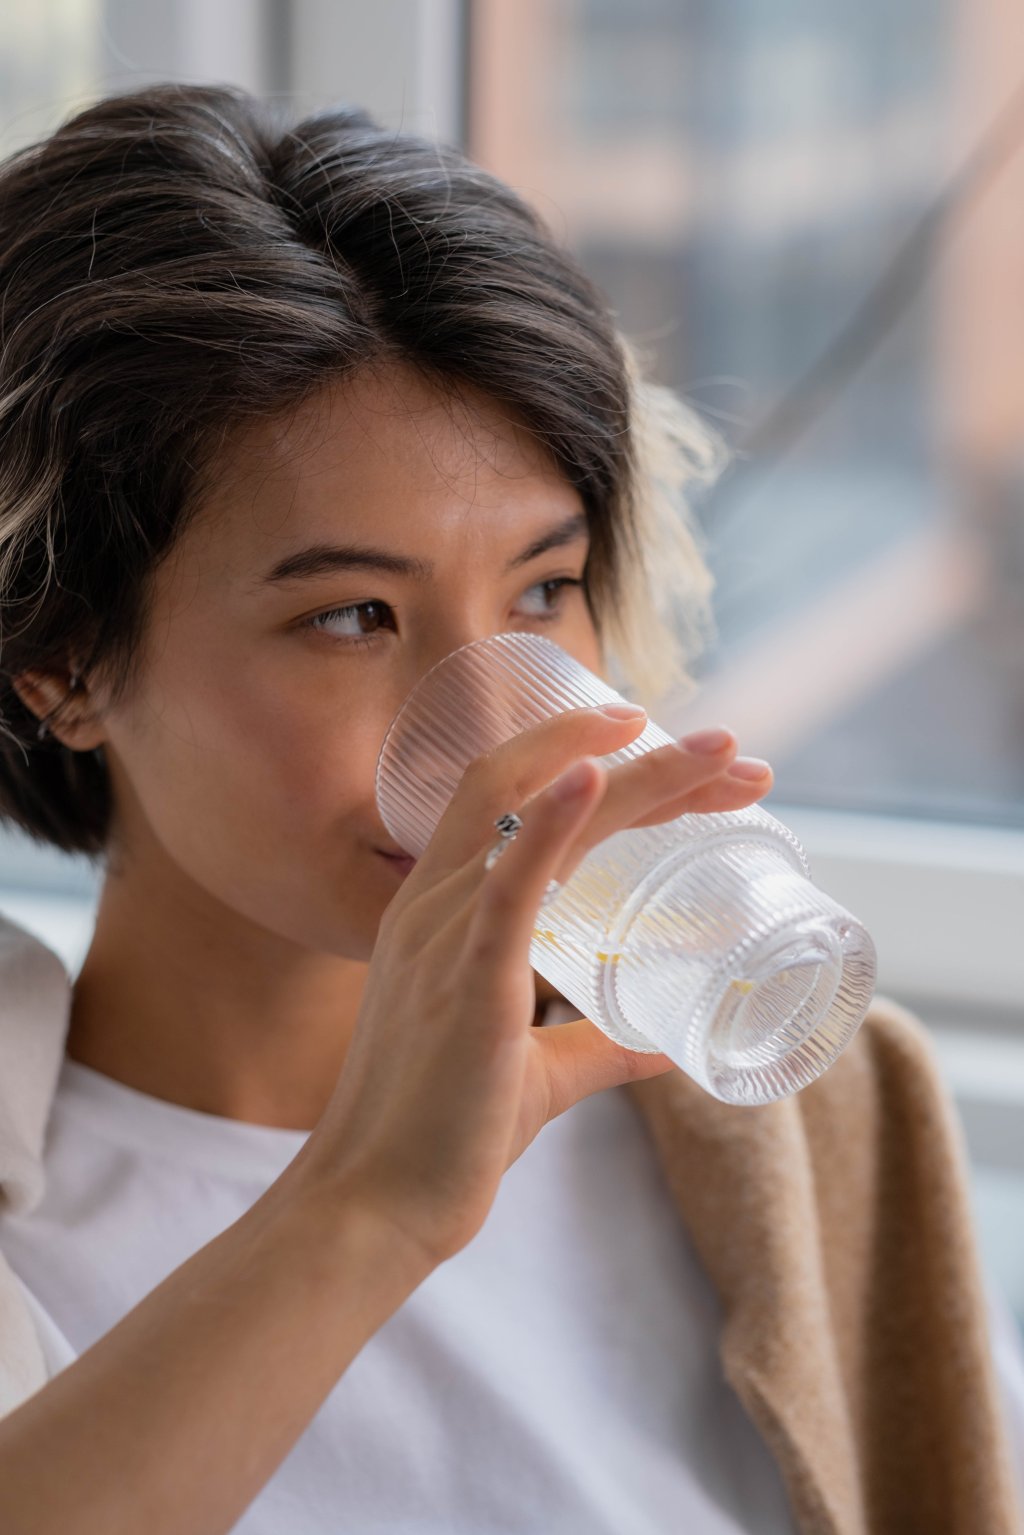 estilo de vida saudável - beber mais água